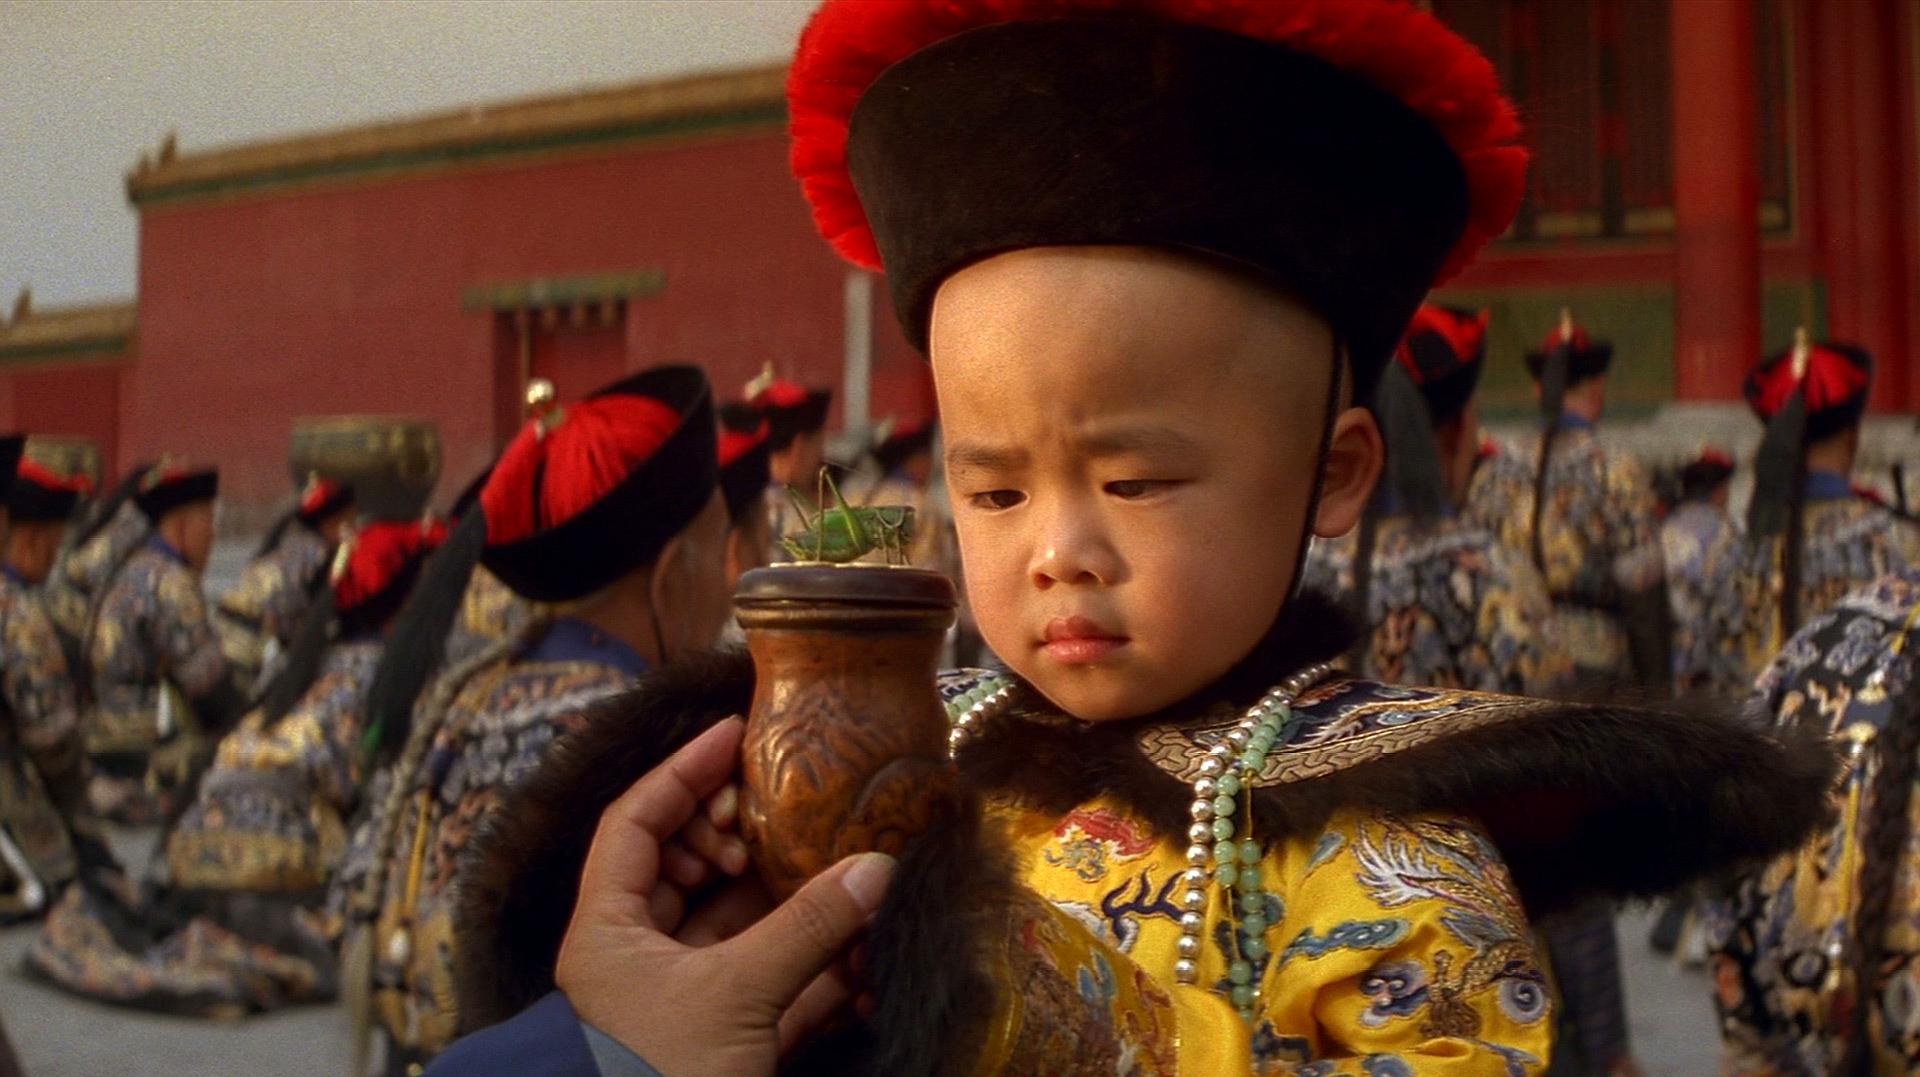 91987年《末代皇帝》:该片讲述了中国最后一个皇帝爱新觉罗·溥仪从